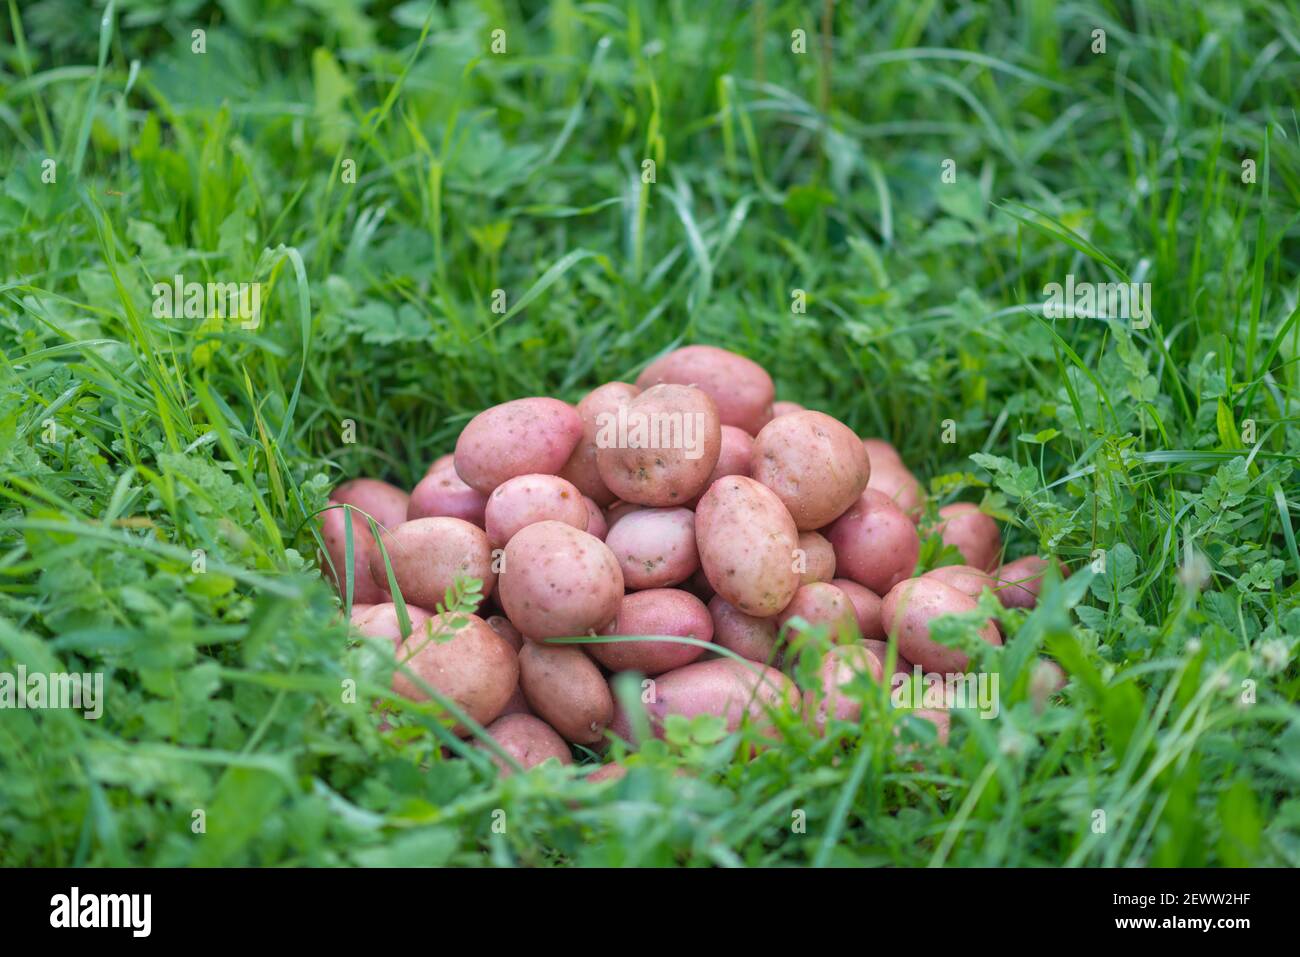 Pila de patatas recién cosechadas y lavadas - Solanum tuberosum sobre hierba. Cosecha de raíces de papa en el jardín casero. Agricultura orgánica, alimentos saludables, B Foto de stock